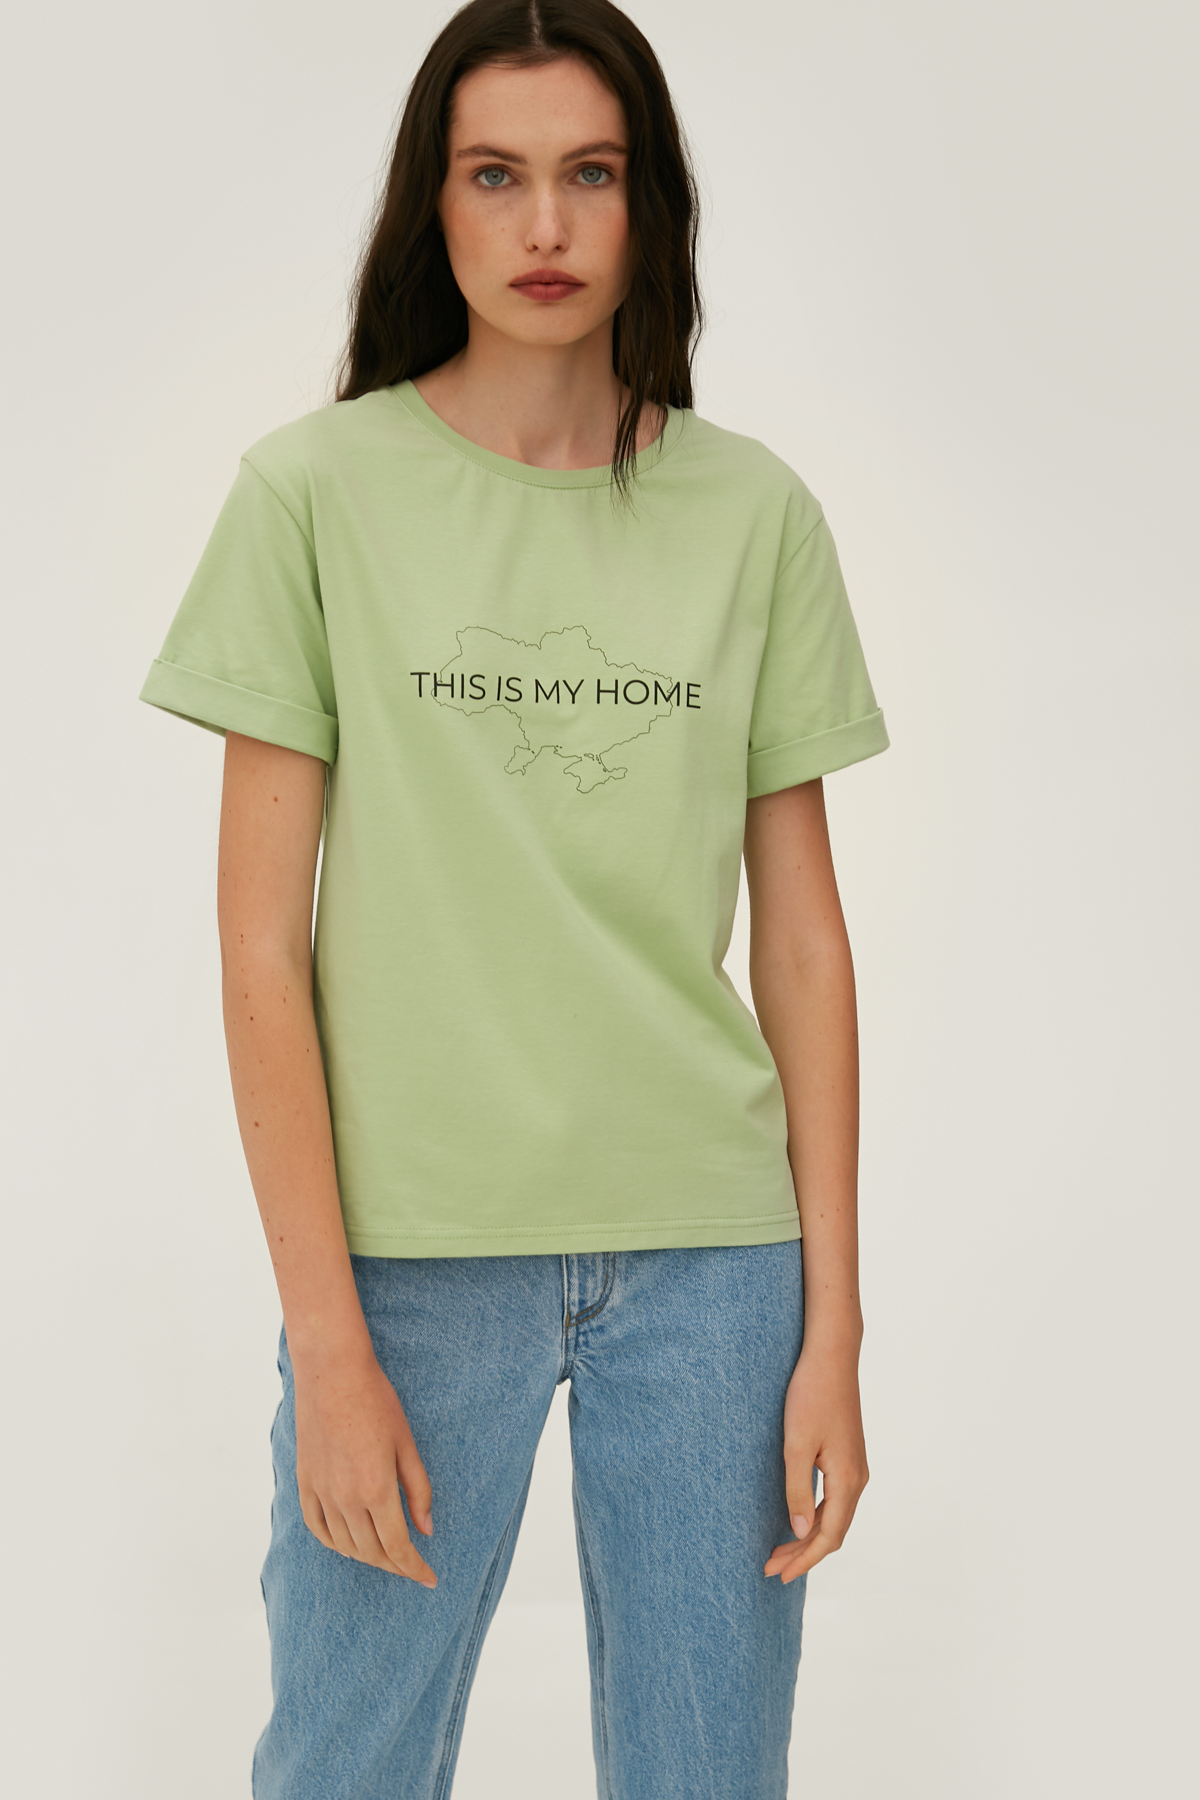 Фісташкова футболка з написом "This is my home" з широким подовженим рукавом, фото 2